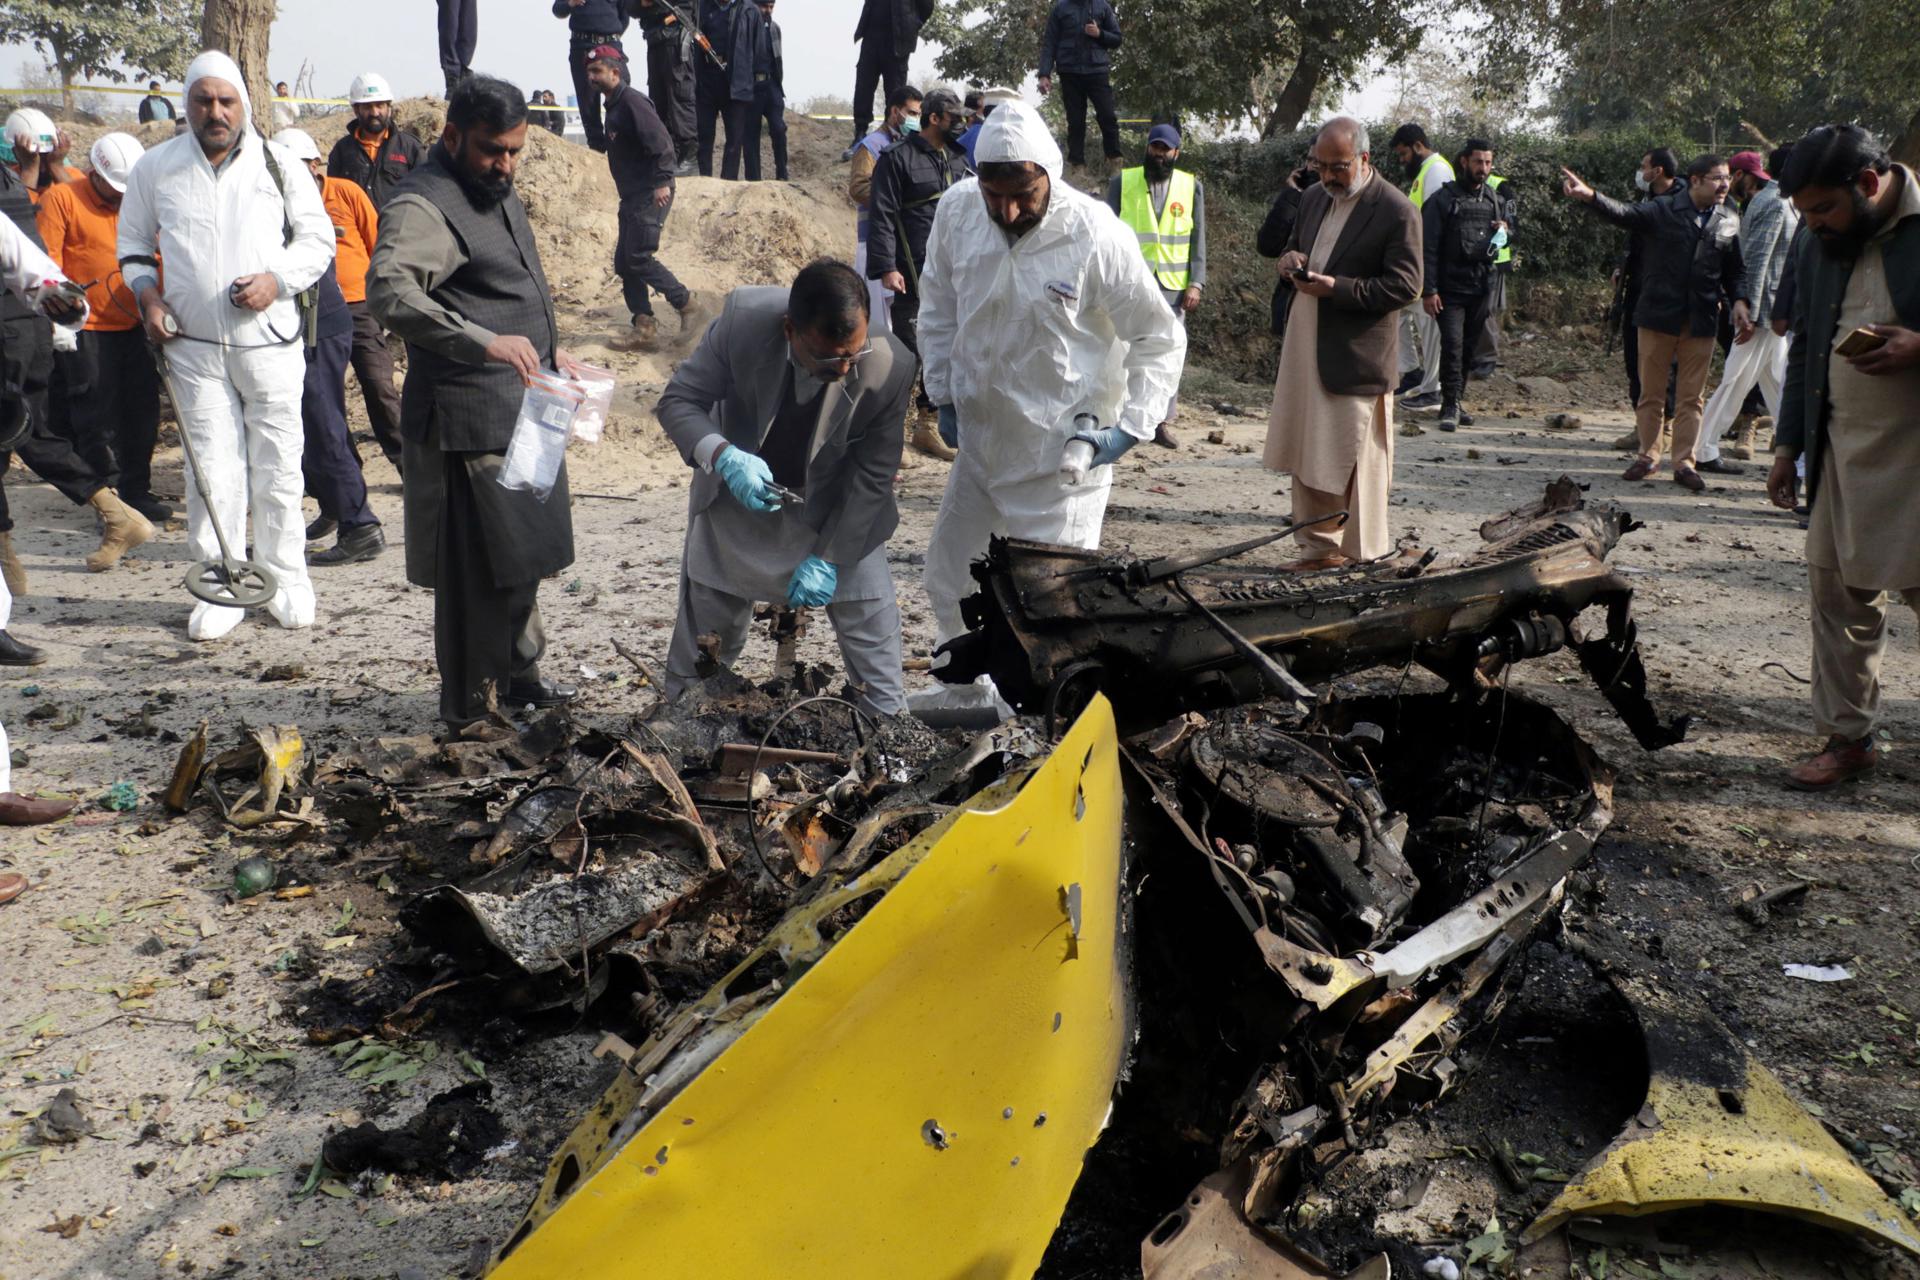 Al menos tres muertos y seis heridos en una explosión suicida en Islamabad